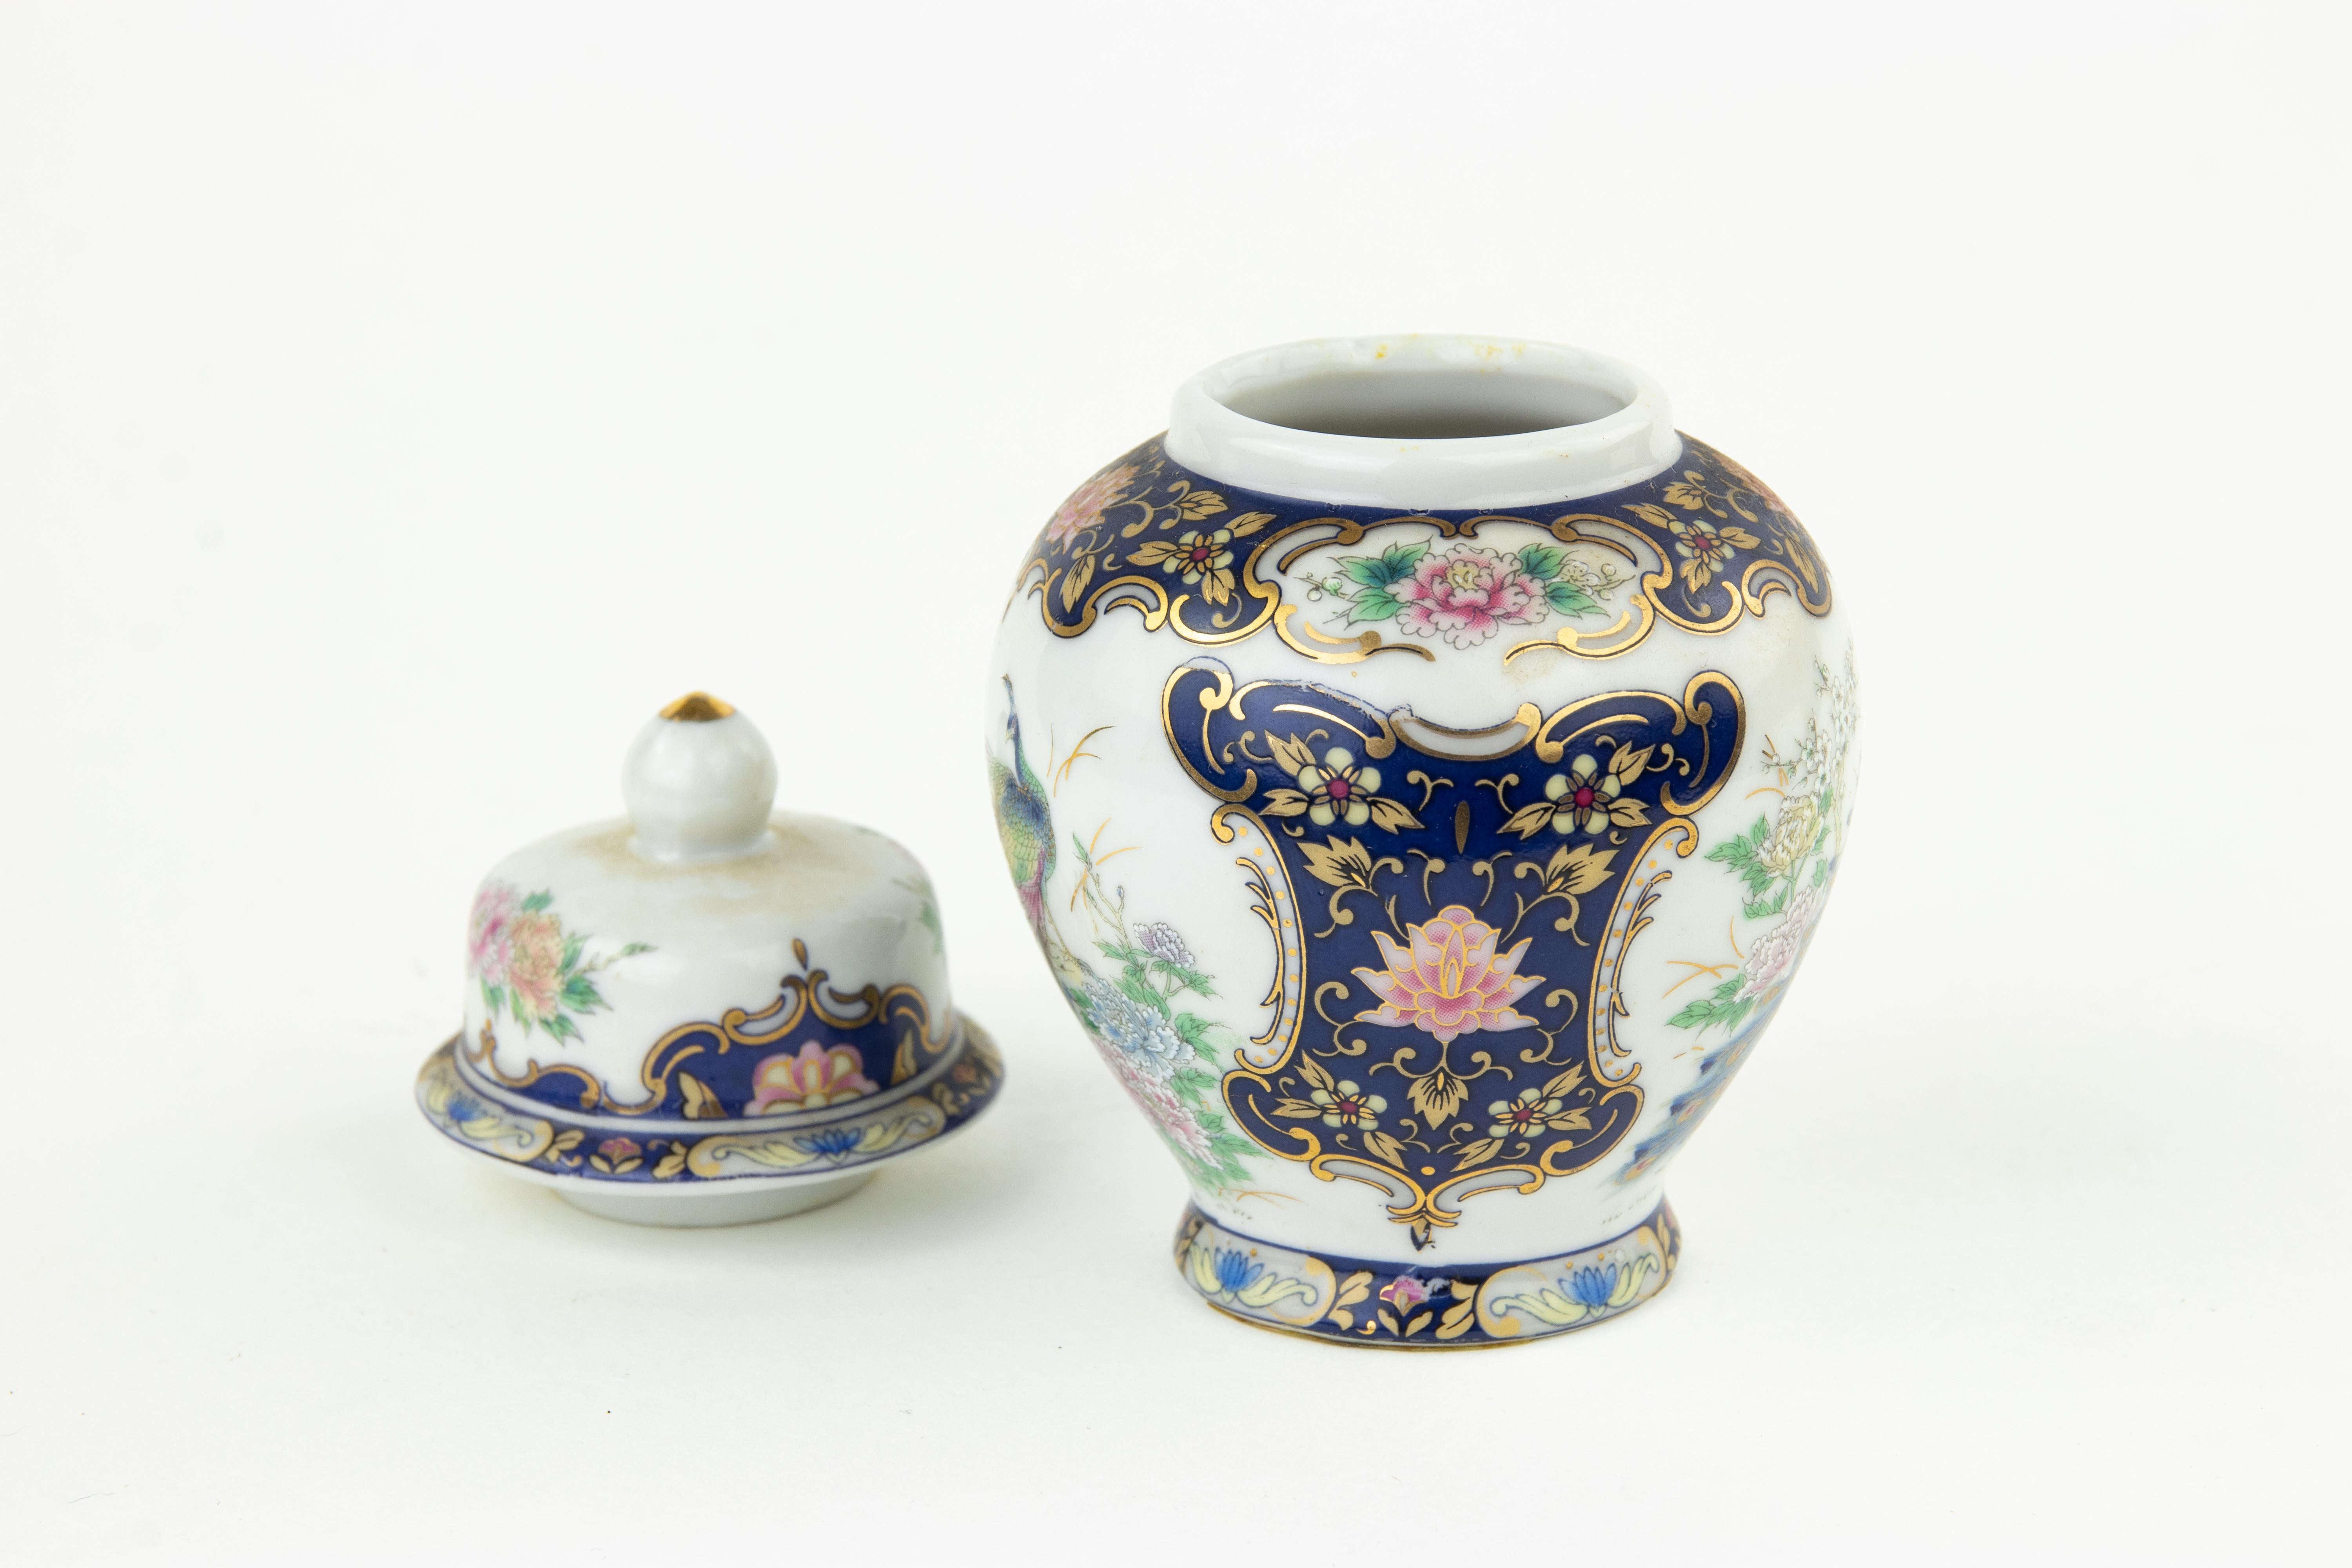 Le vase en céramique est un objet réalisé par Italgift, Italie, dans les années 1970.

12 x 7 cm.

Très bonnes conditions !